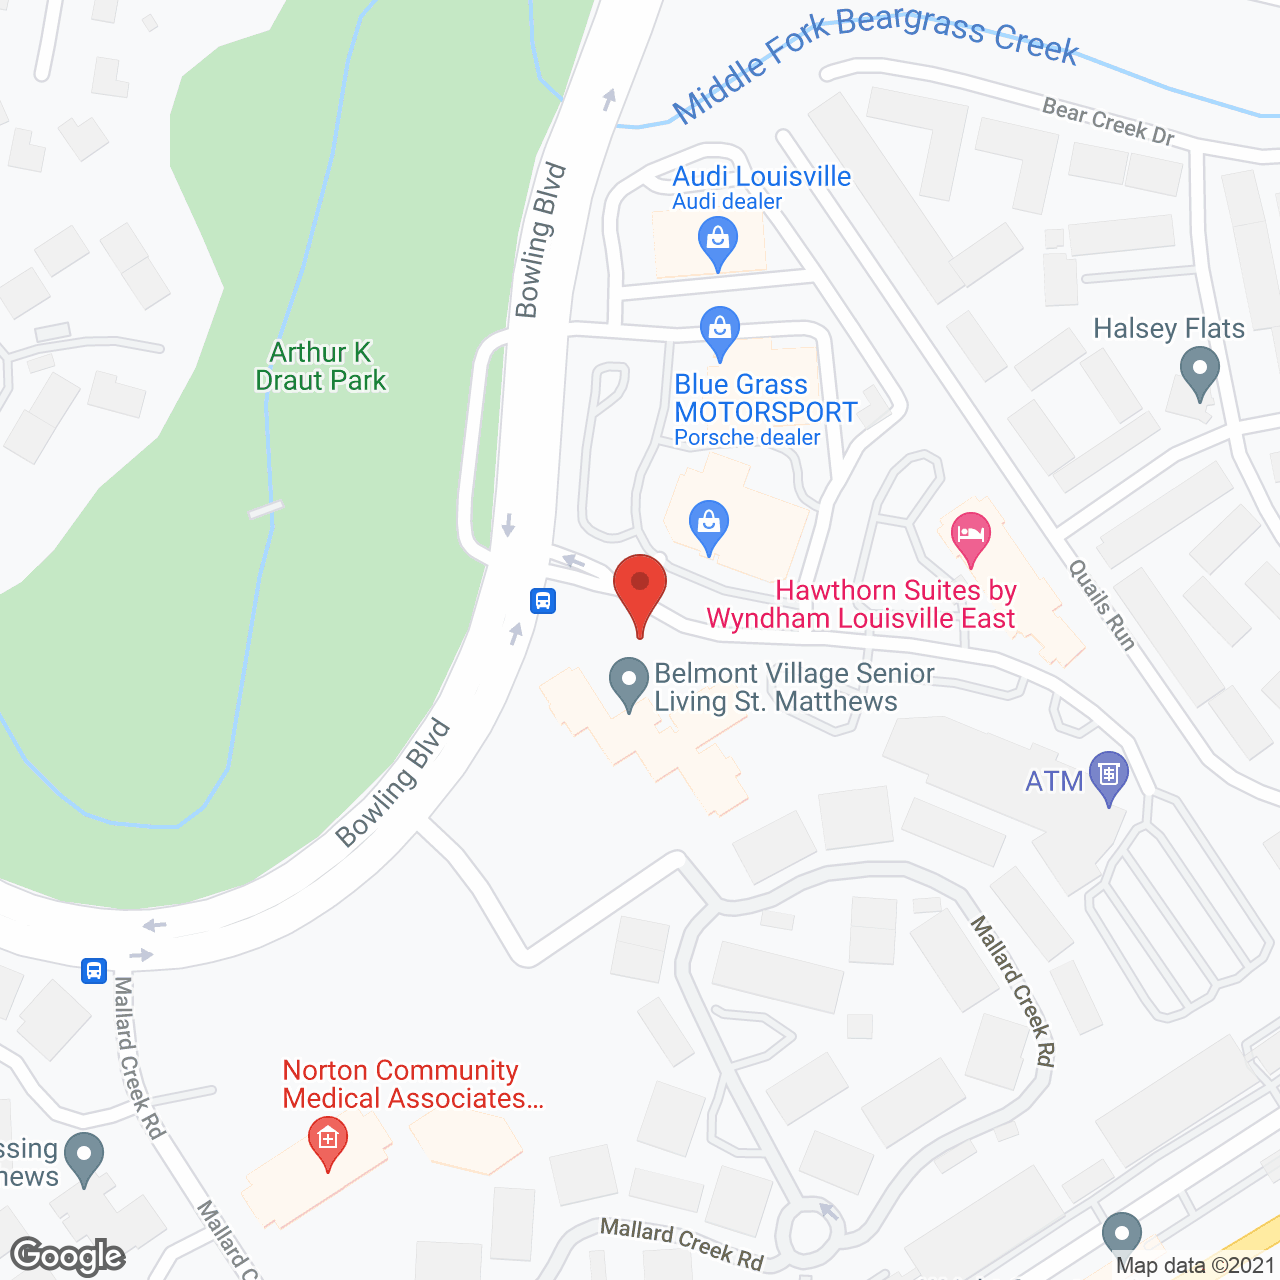 Belmont Village St. Matthews in google map